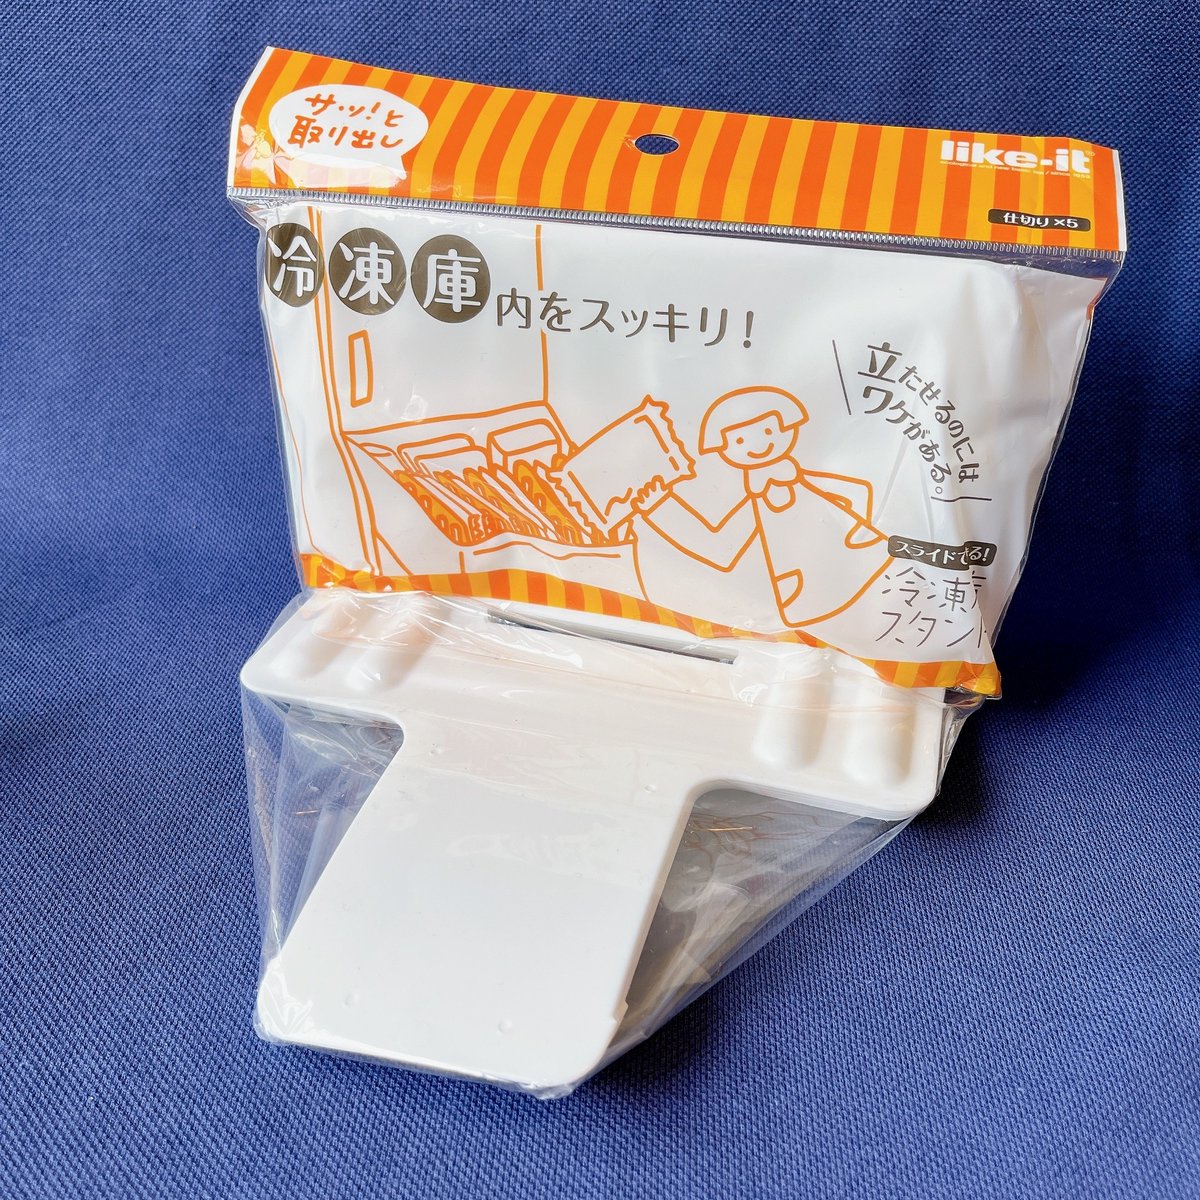 「【ハンズ】便利すぎてあと3個ほしい…!冷凍庫がスッキリする「優秀スタンド」出し入」|BuzzFeed Japanのイラスト